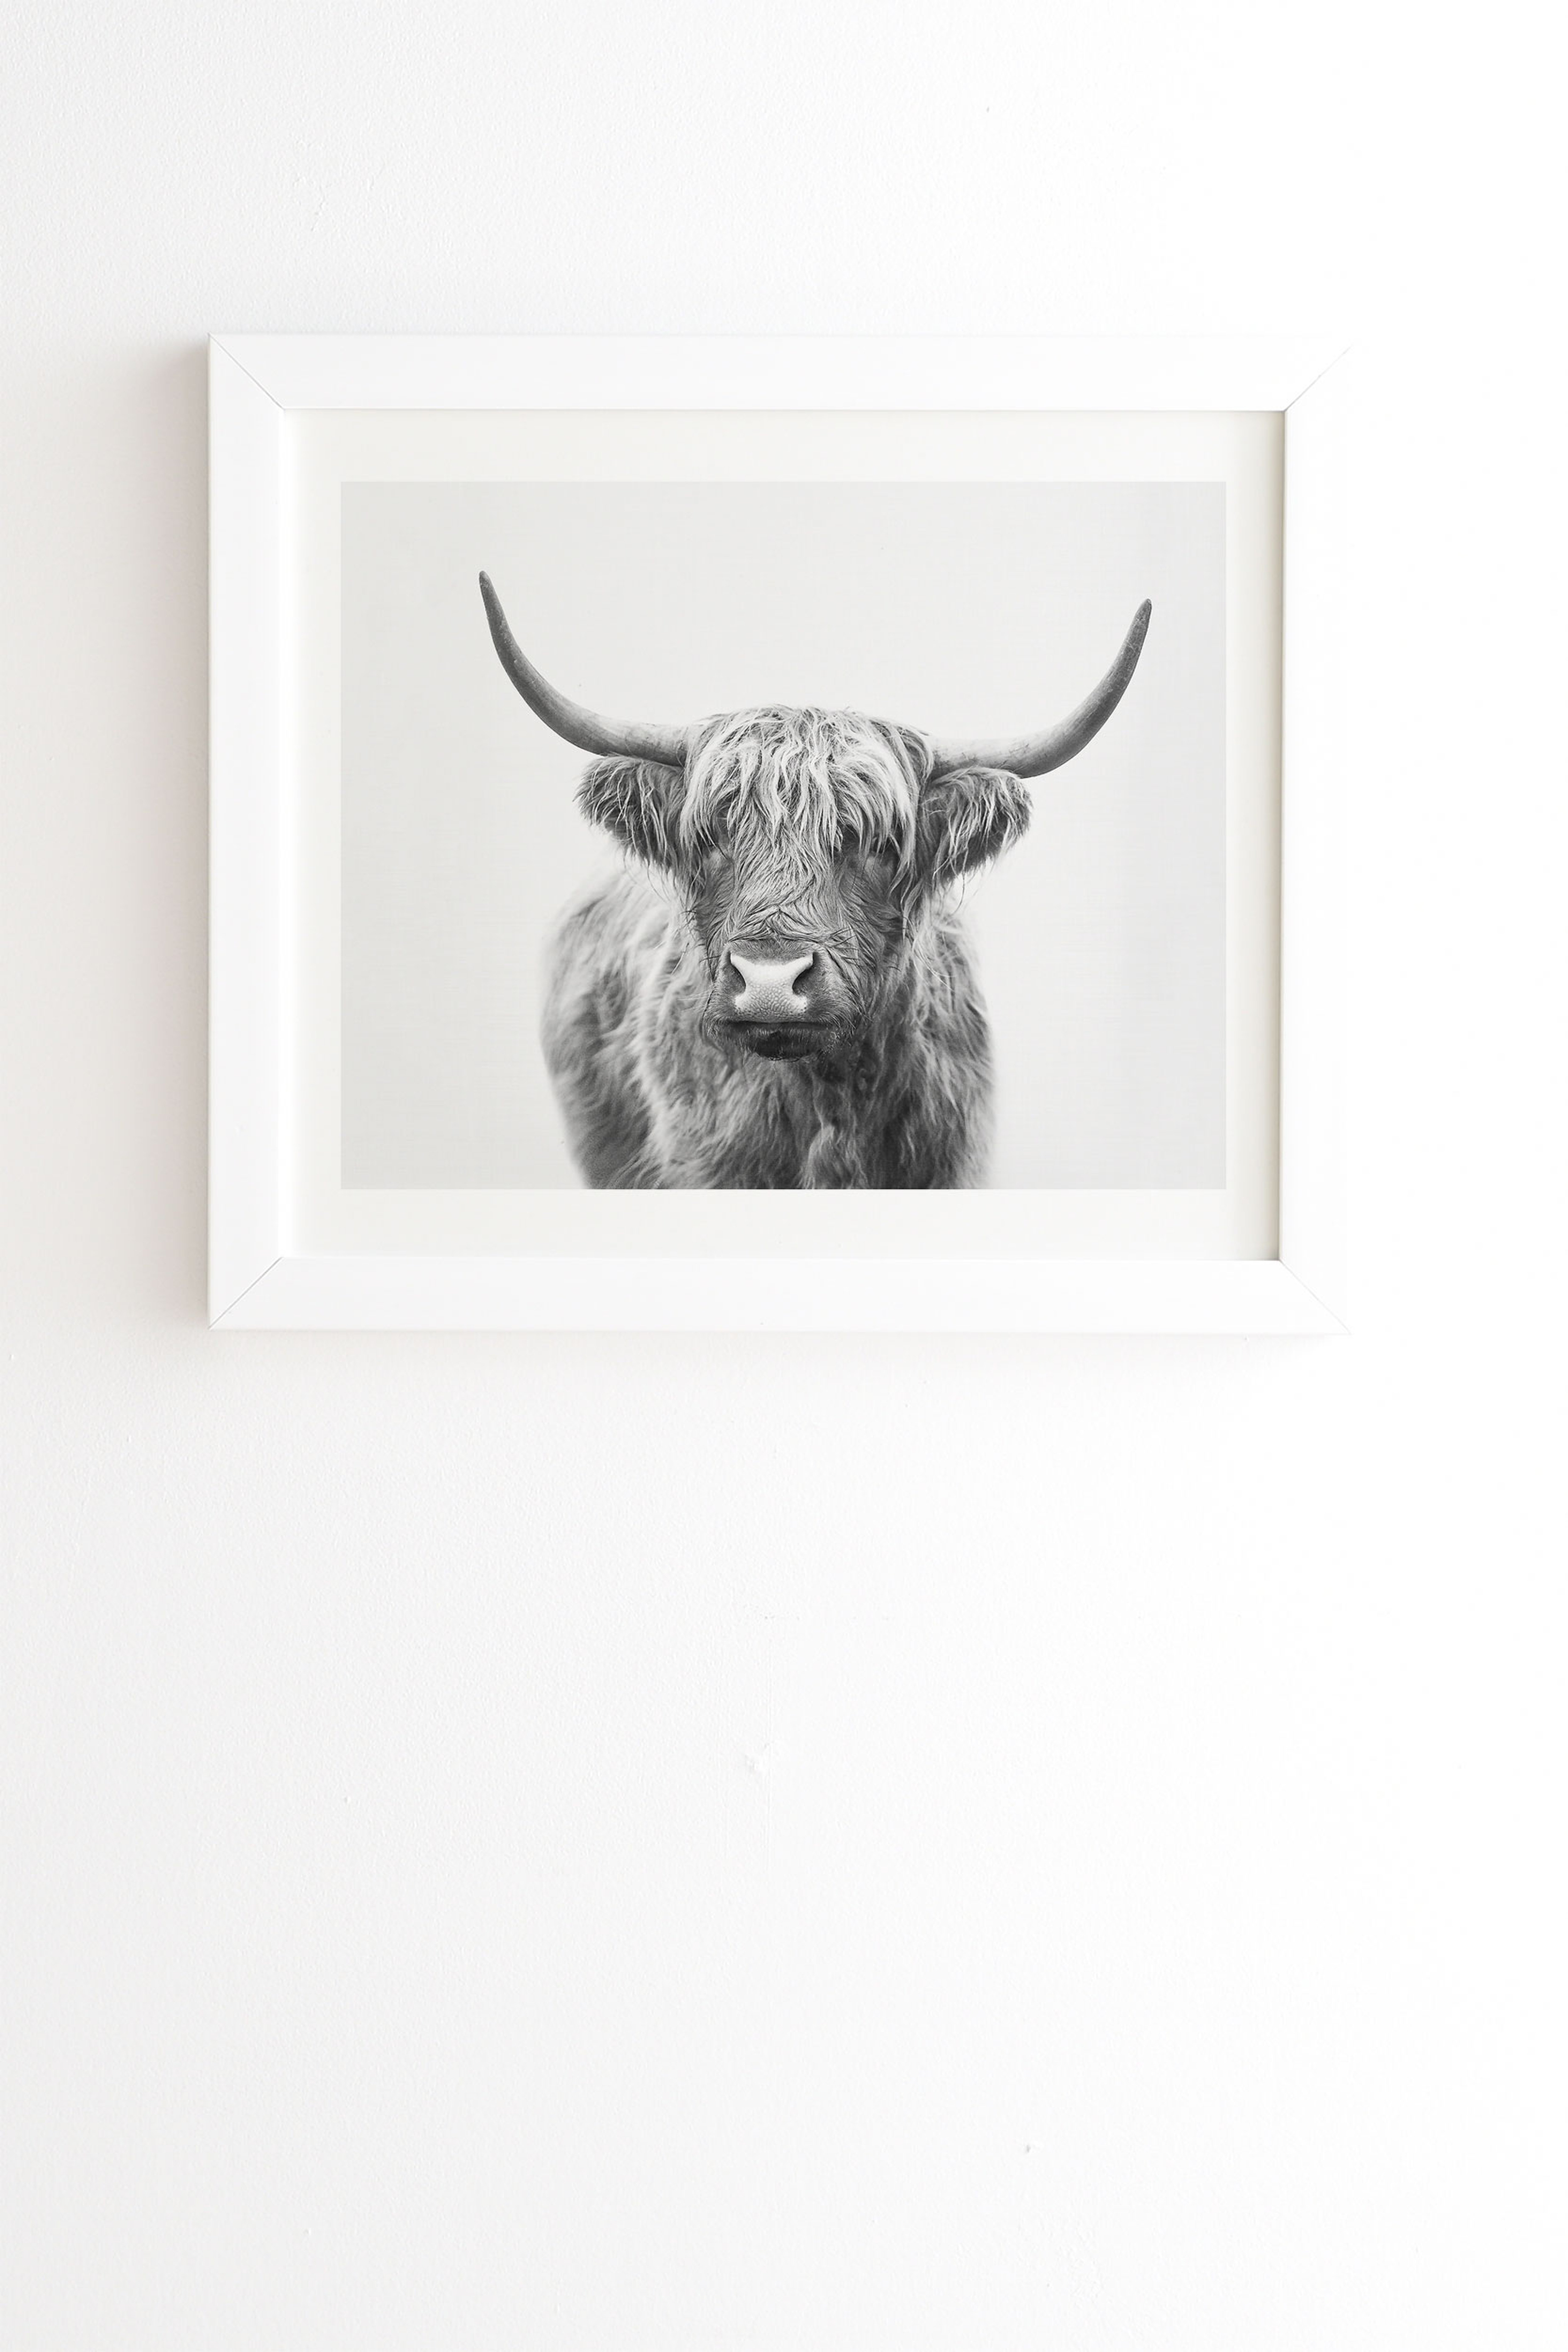 Highland Bull by Sisi and Seb - Framed Wall Art Basic White 11" x 13" - Wander Print Co.